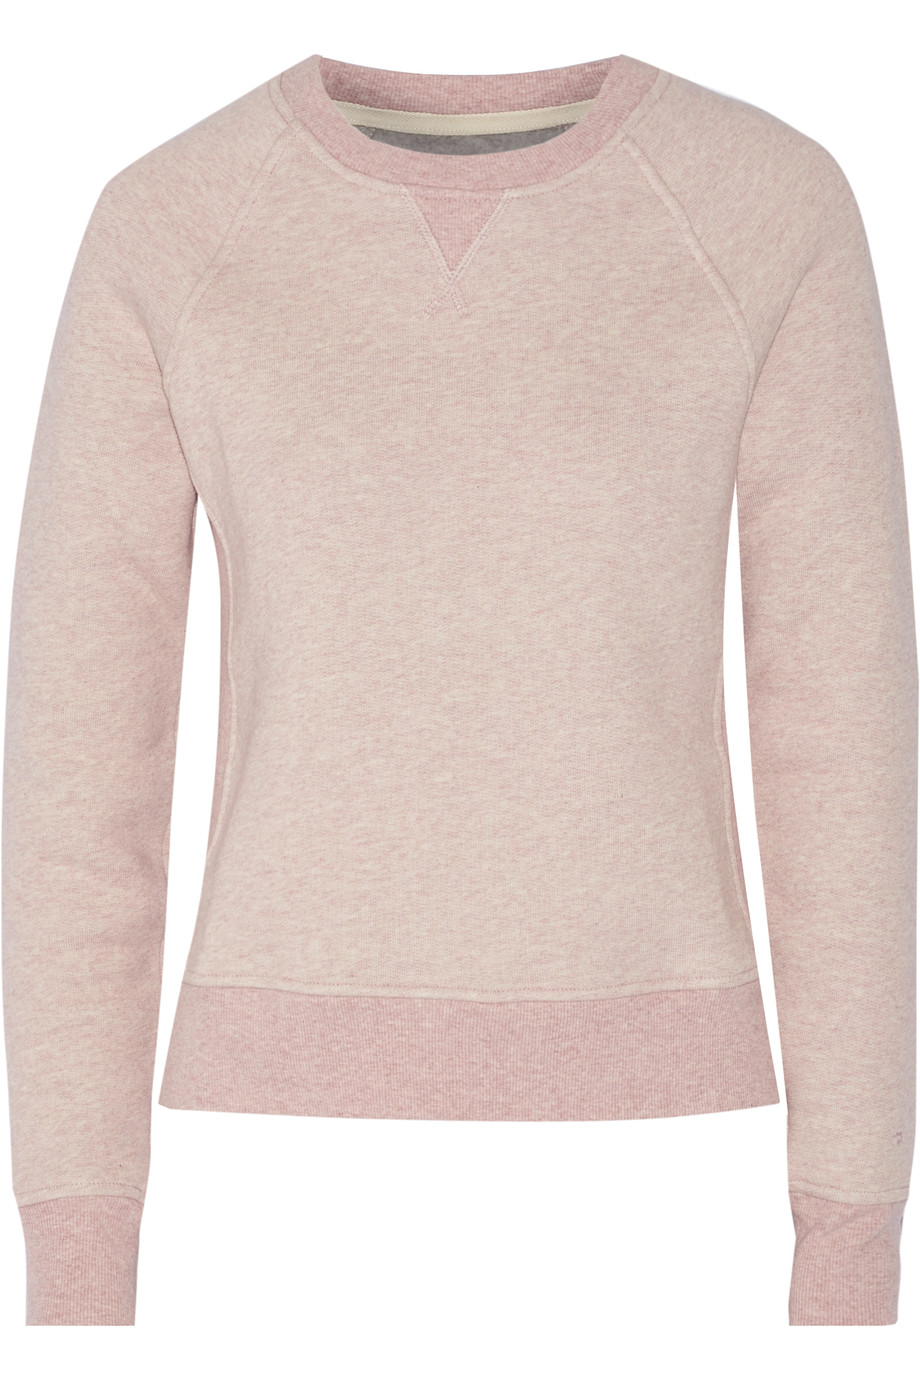 Rag & Bone Langford Cotton-fleece Sweatshirt | ModeSens